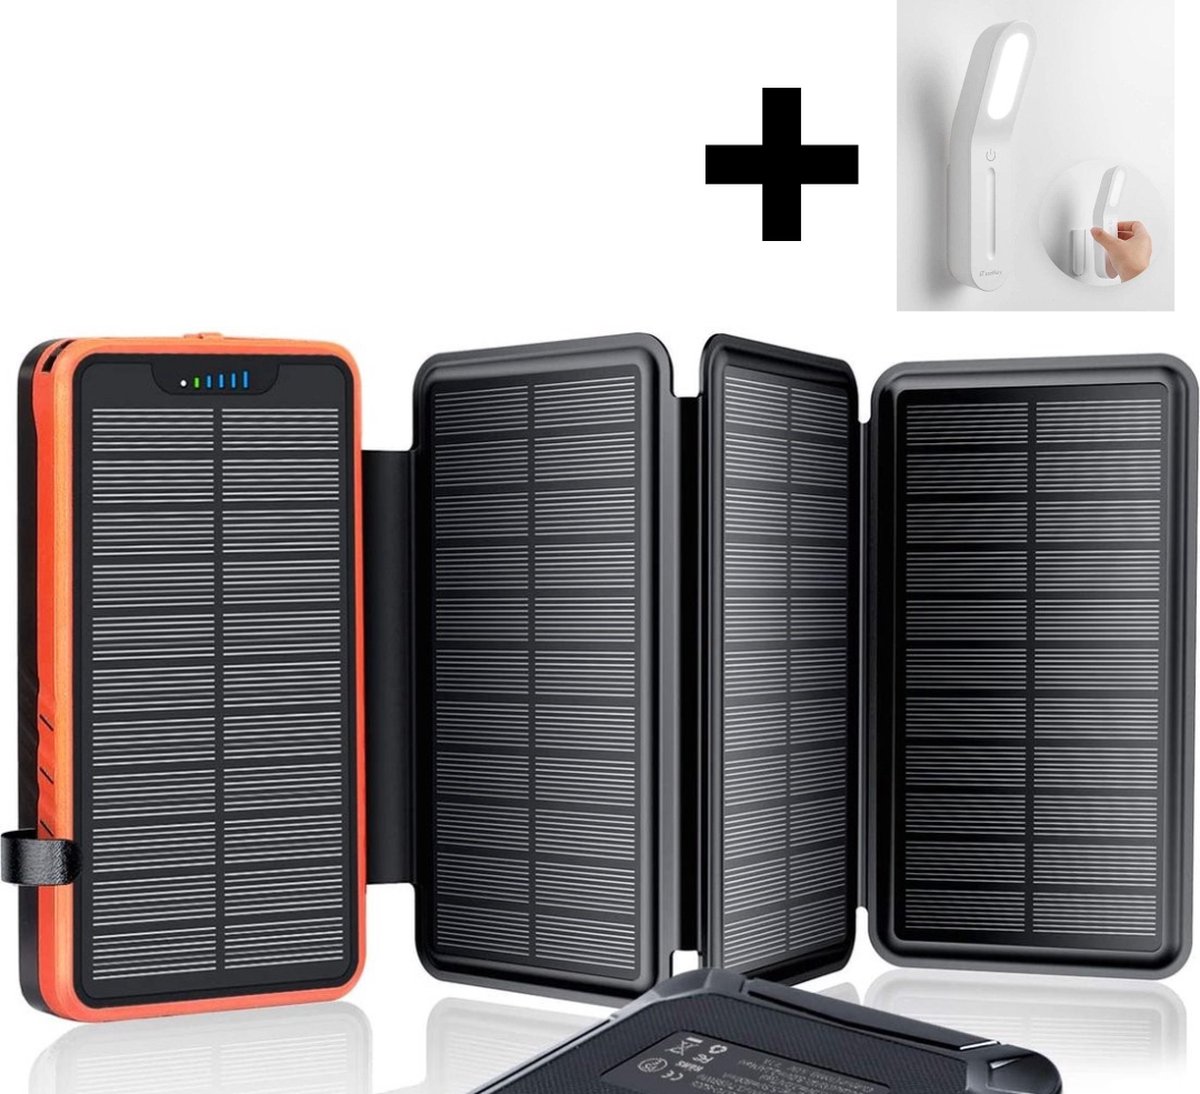 IEsafy Solar PowerBank 26800mAh inclusief nachtlamp - Oplader op zonne-energie met 4 zonnepanelen - Met zaklamp - 2x 5 V 2,1 A USB-poorten, externe accu, compatibel voor smartphones - Oranje